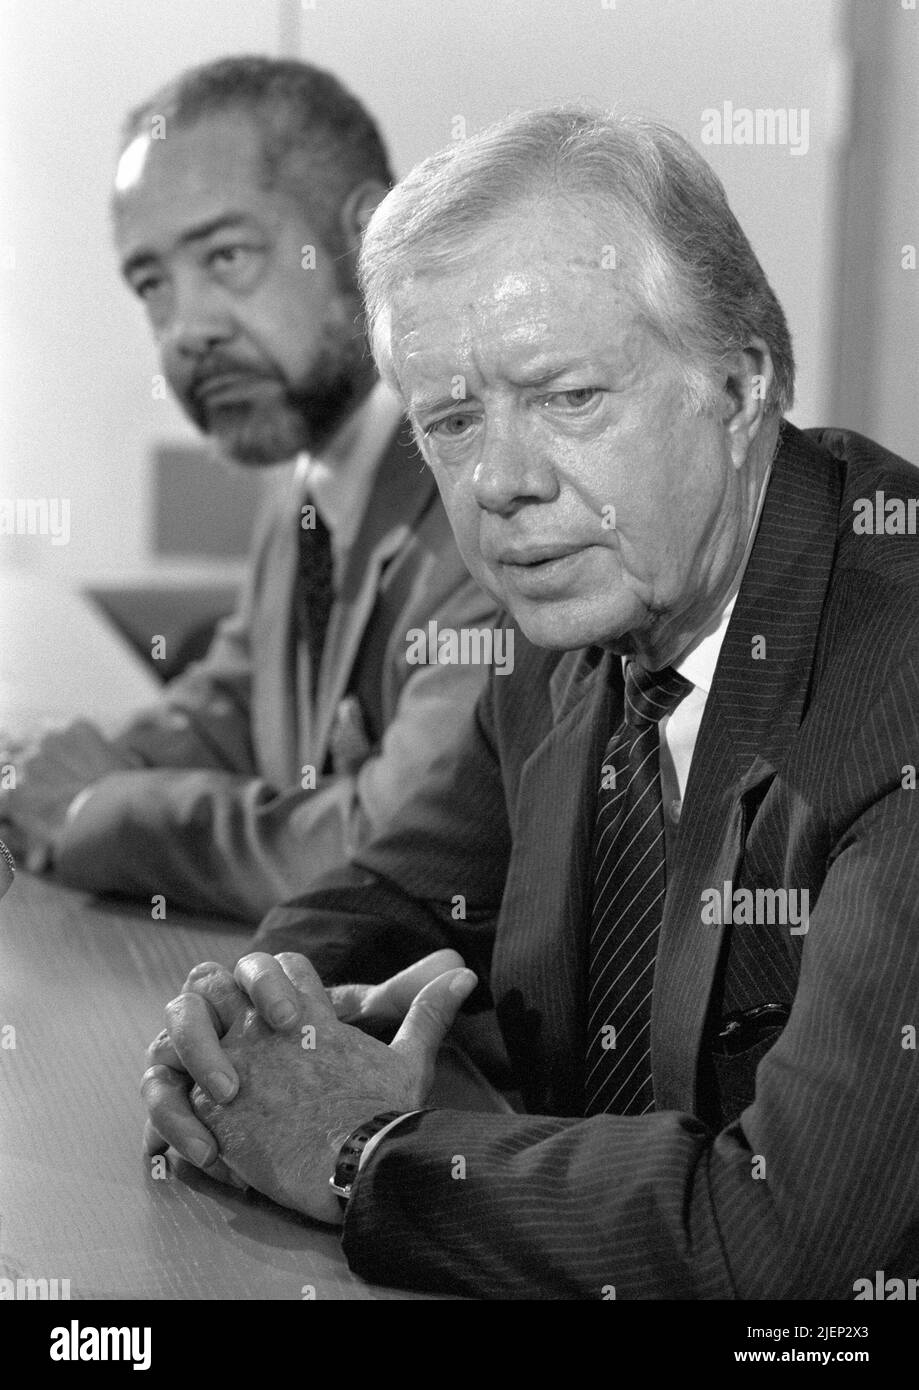 Der ehemalige US-Präsident Jimmy Carter bei einer Pressekonferenz am 6. Oktober 1988 in den Niederlanden auf dem Amsterdamer Flughafen Schiphol. Stockfoto